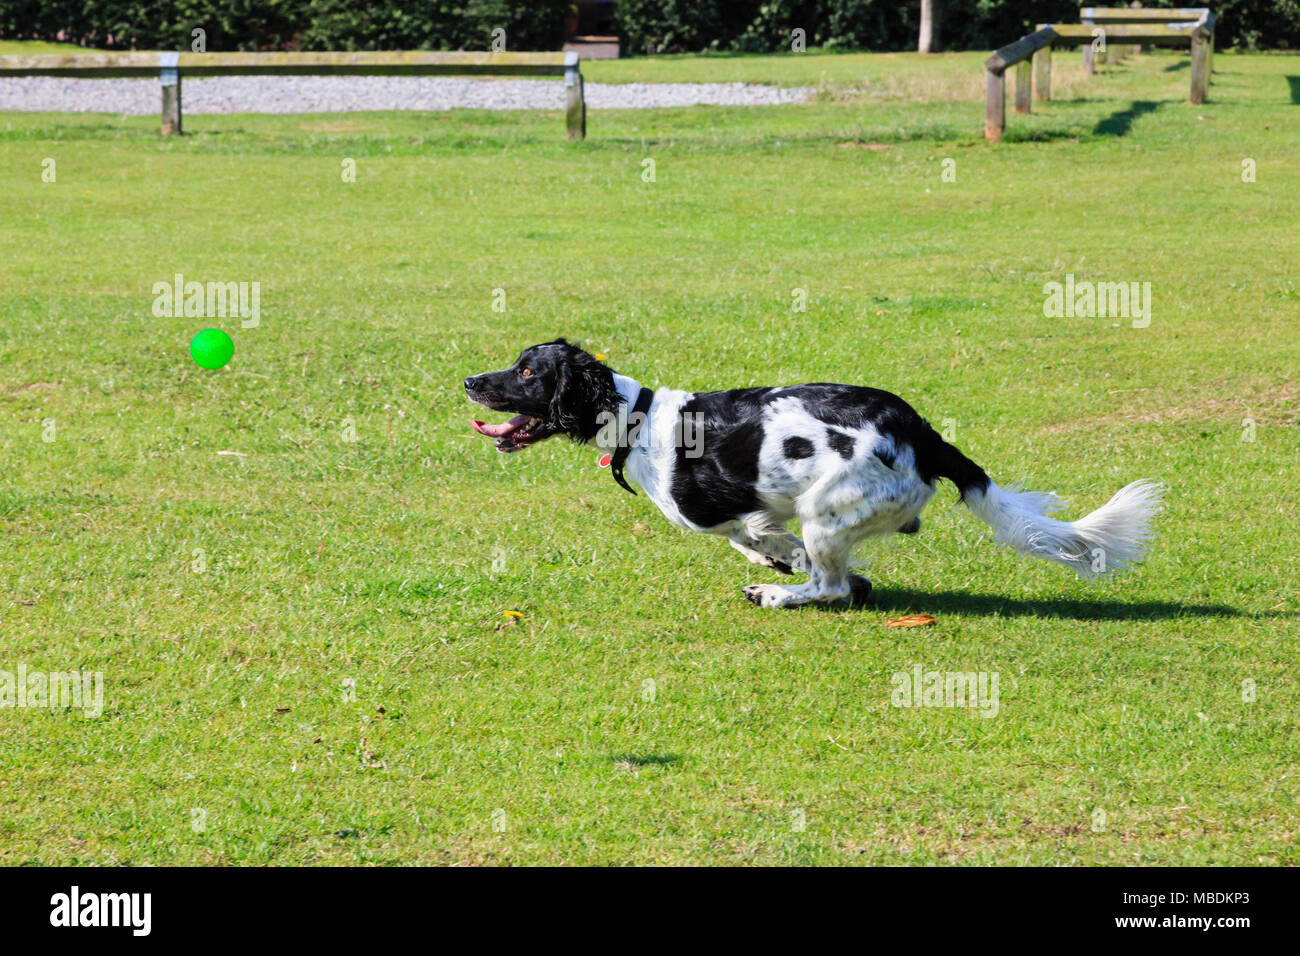 Un adulto in bianco e nero English Springer Spaniel (Canis lupus familiaris) il cane corre veloce a caccia di una sfera al di fuori in un parco. Inghilterra, Regno Unito, Gran Bretagna Foto Stock